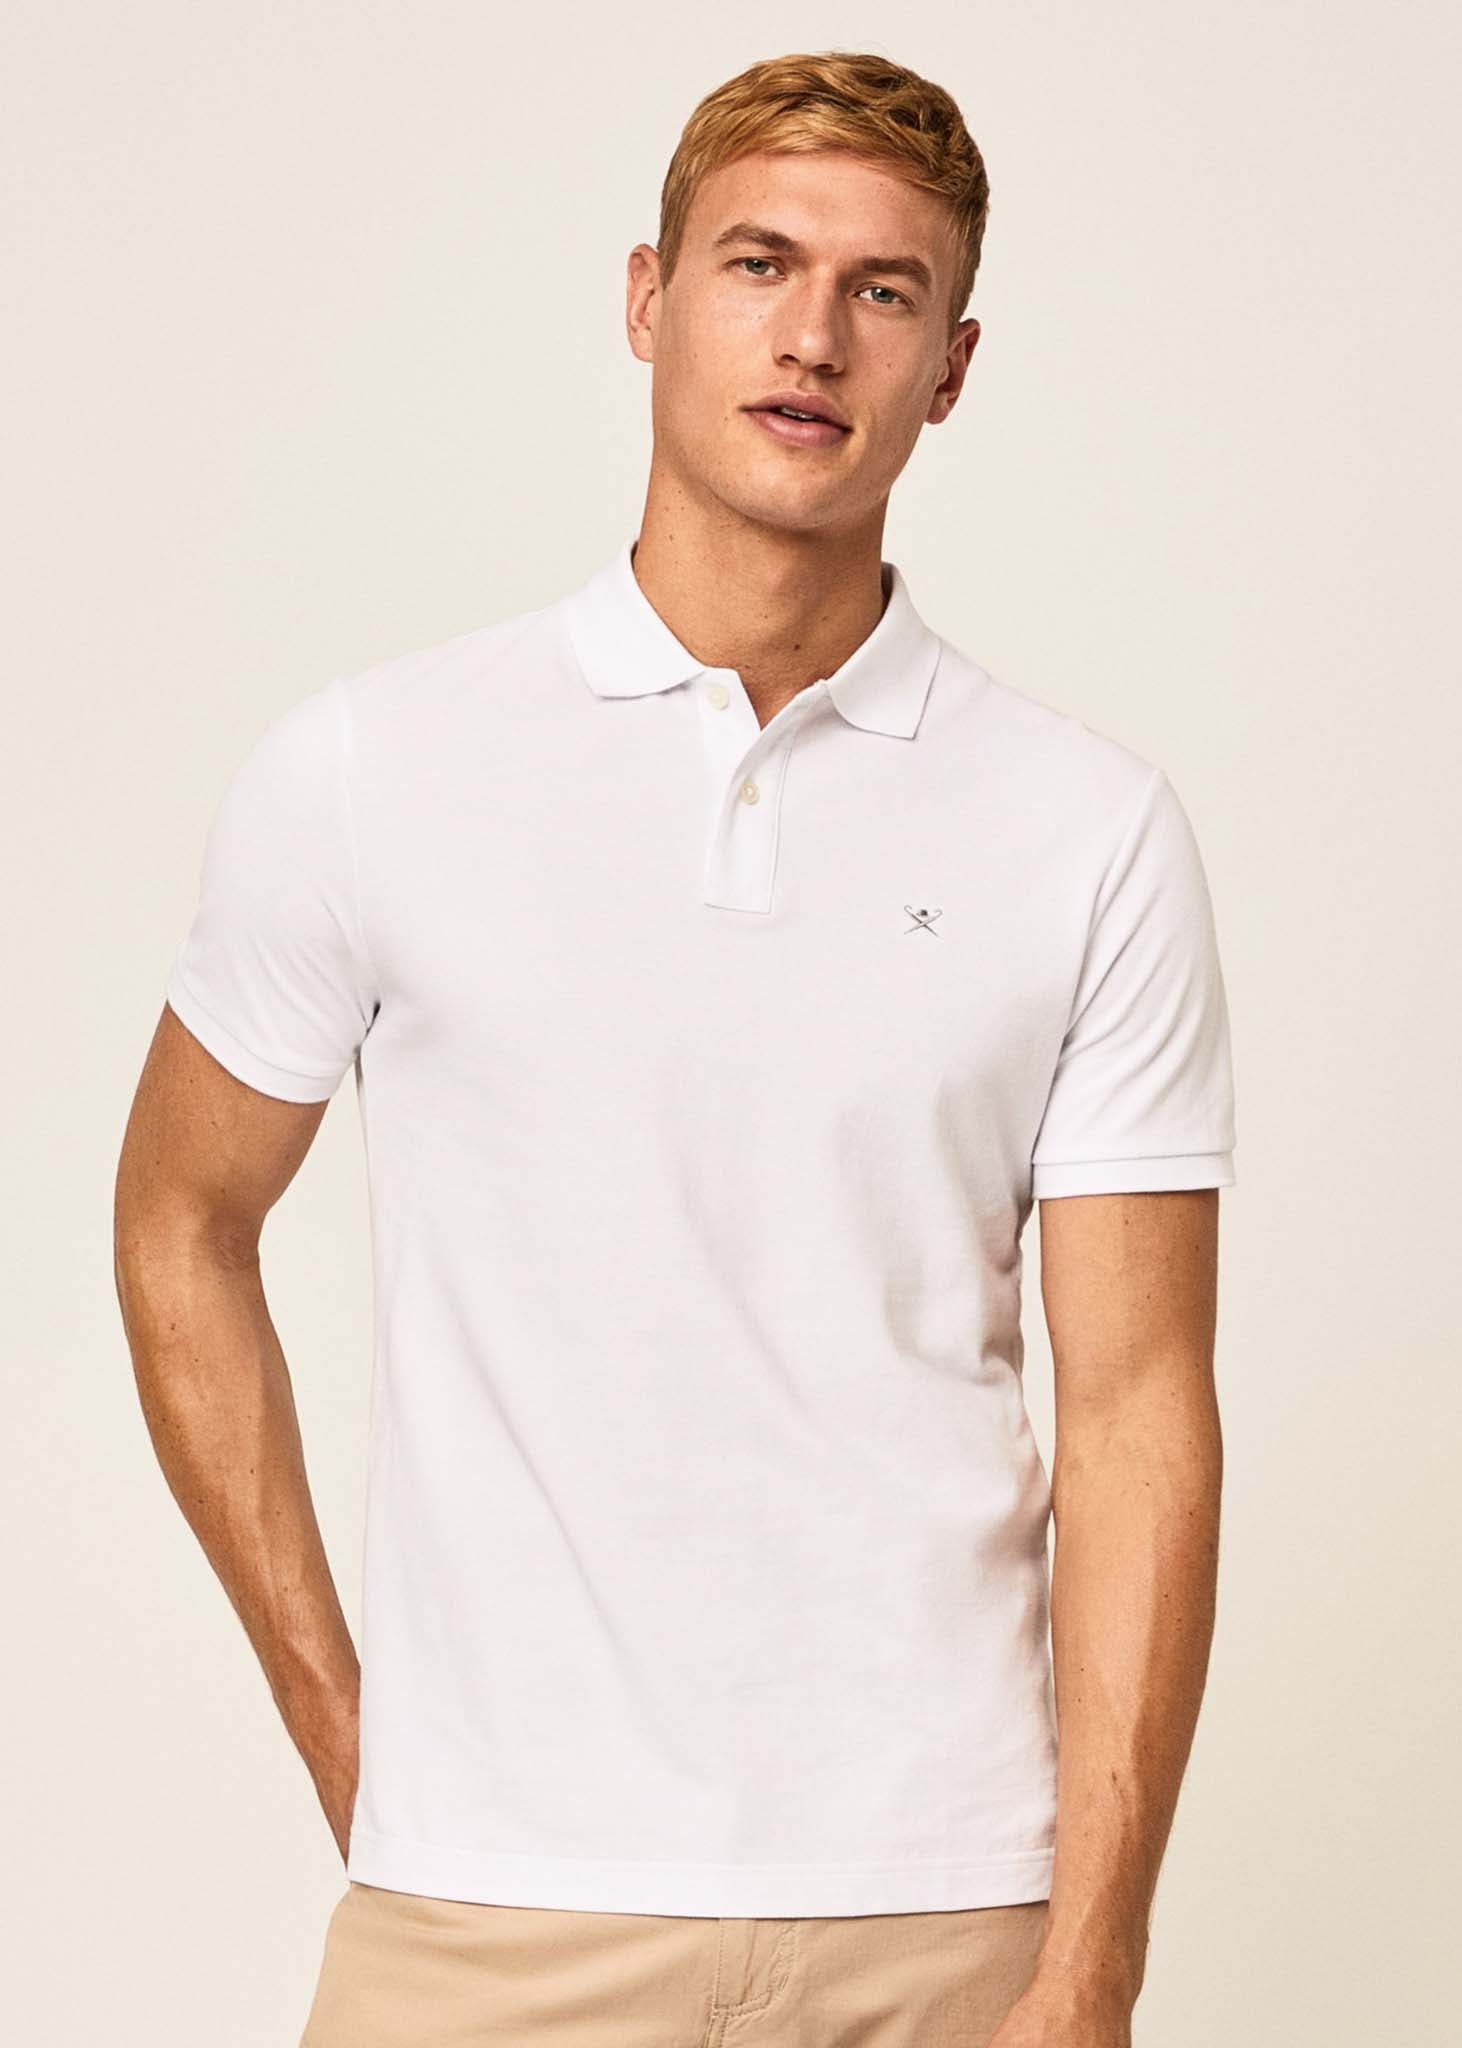 Hackett London Polo's  Cotton pique polo shirt - optic white 